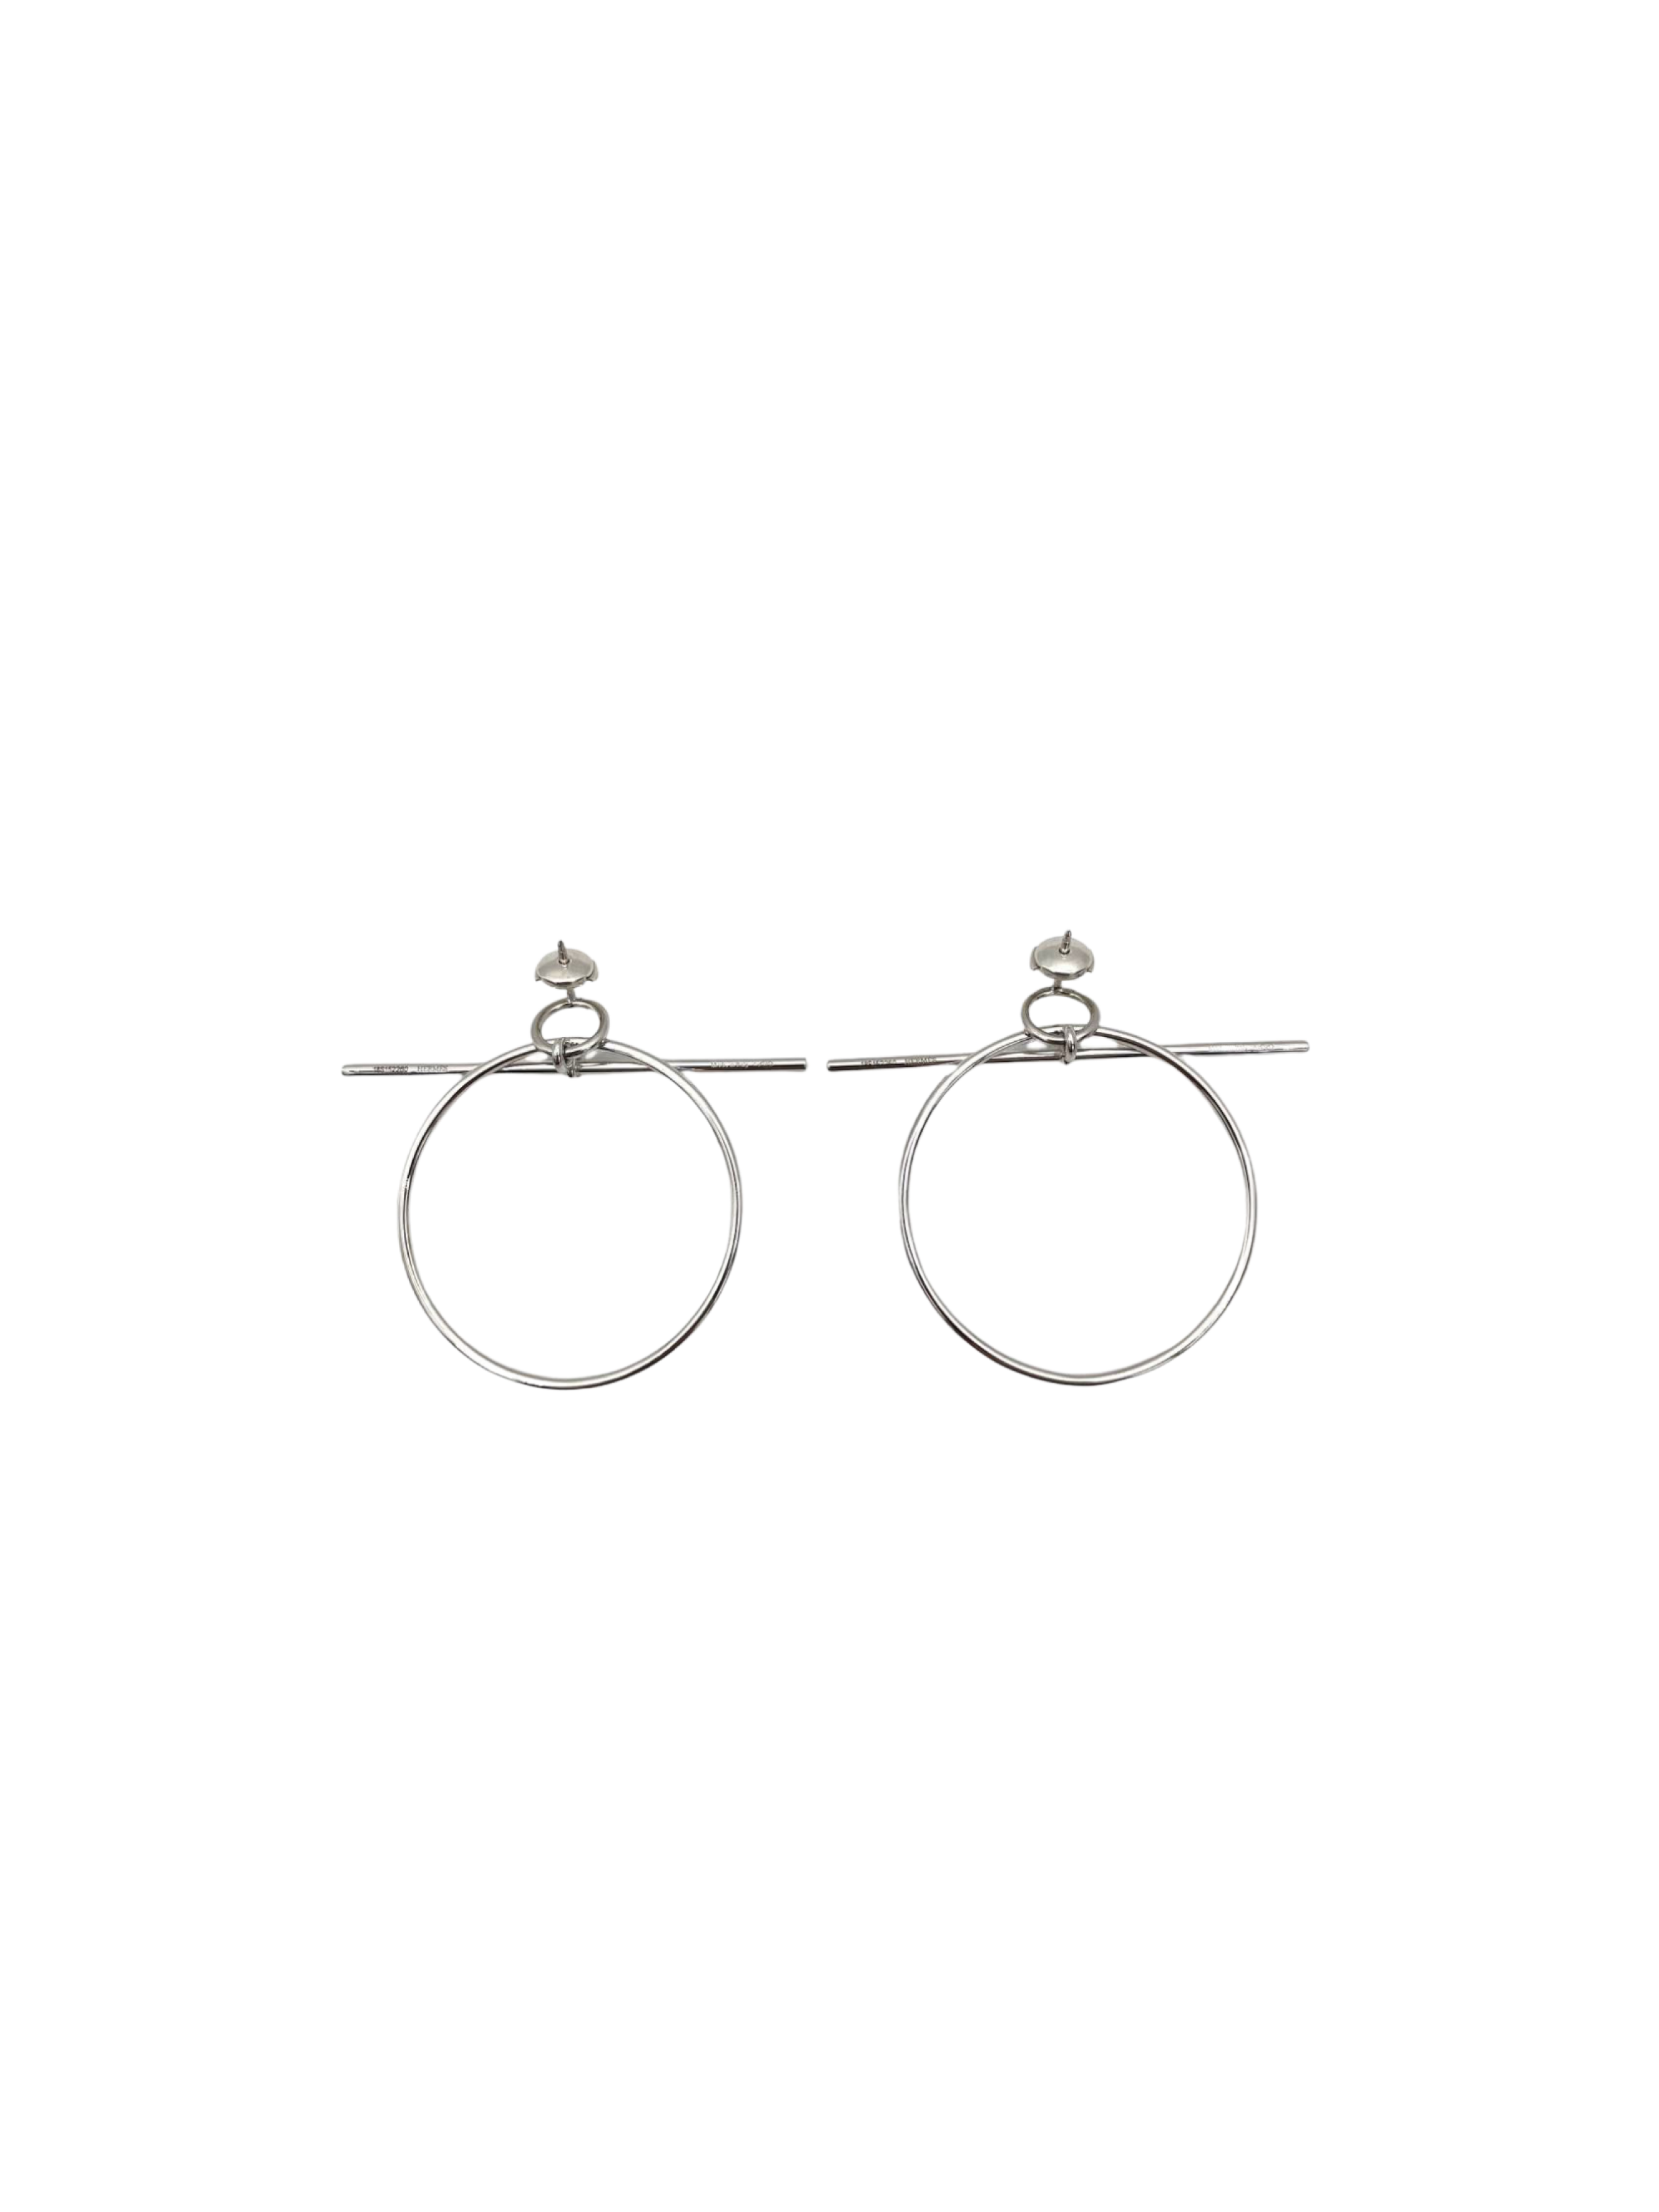 Hermès 2010s Sterling Silver T Hoop Earrings